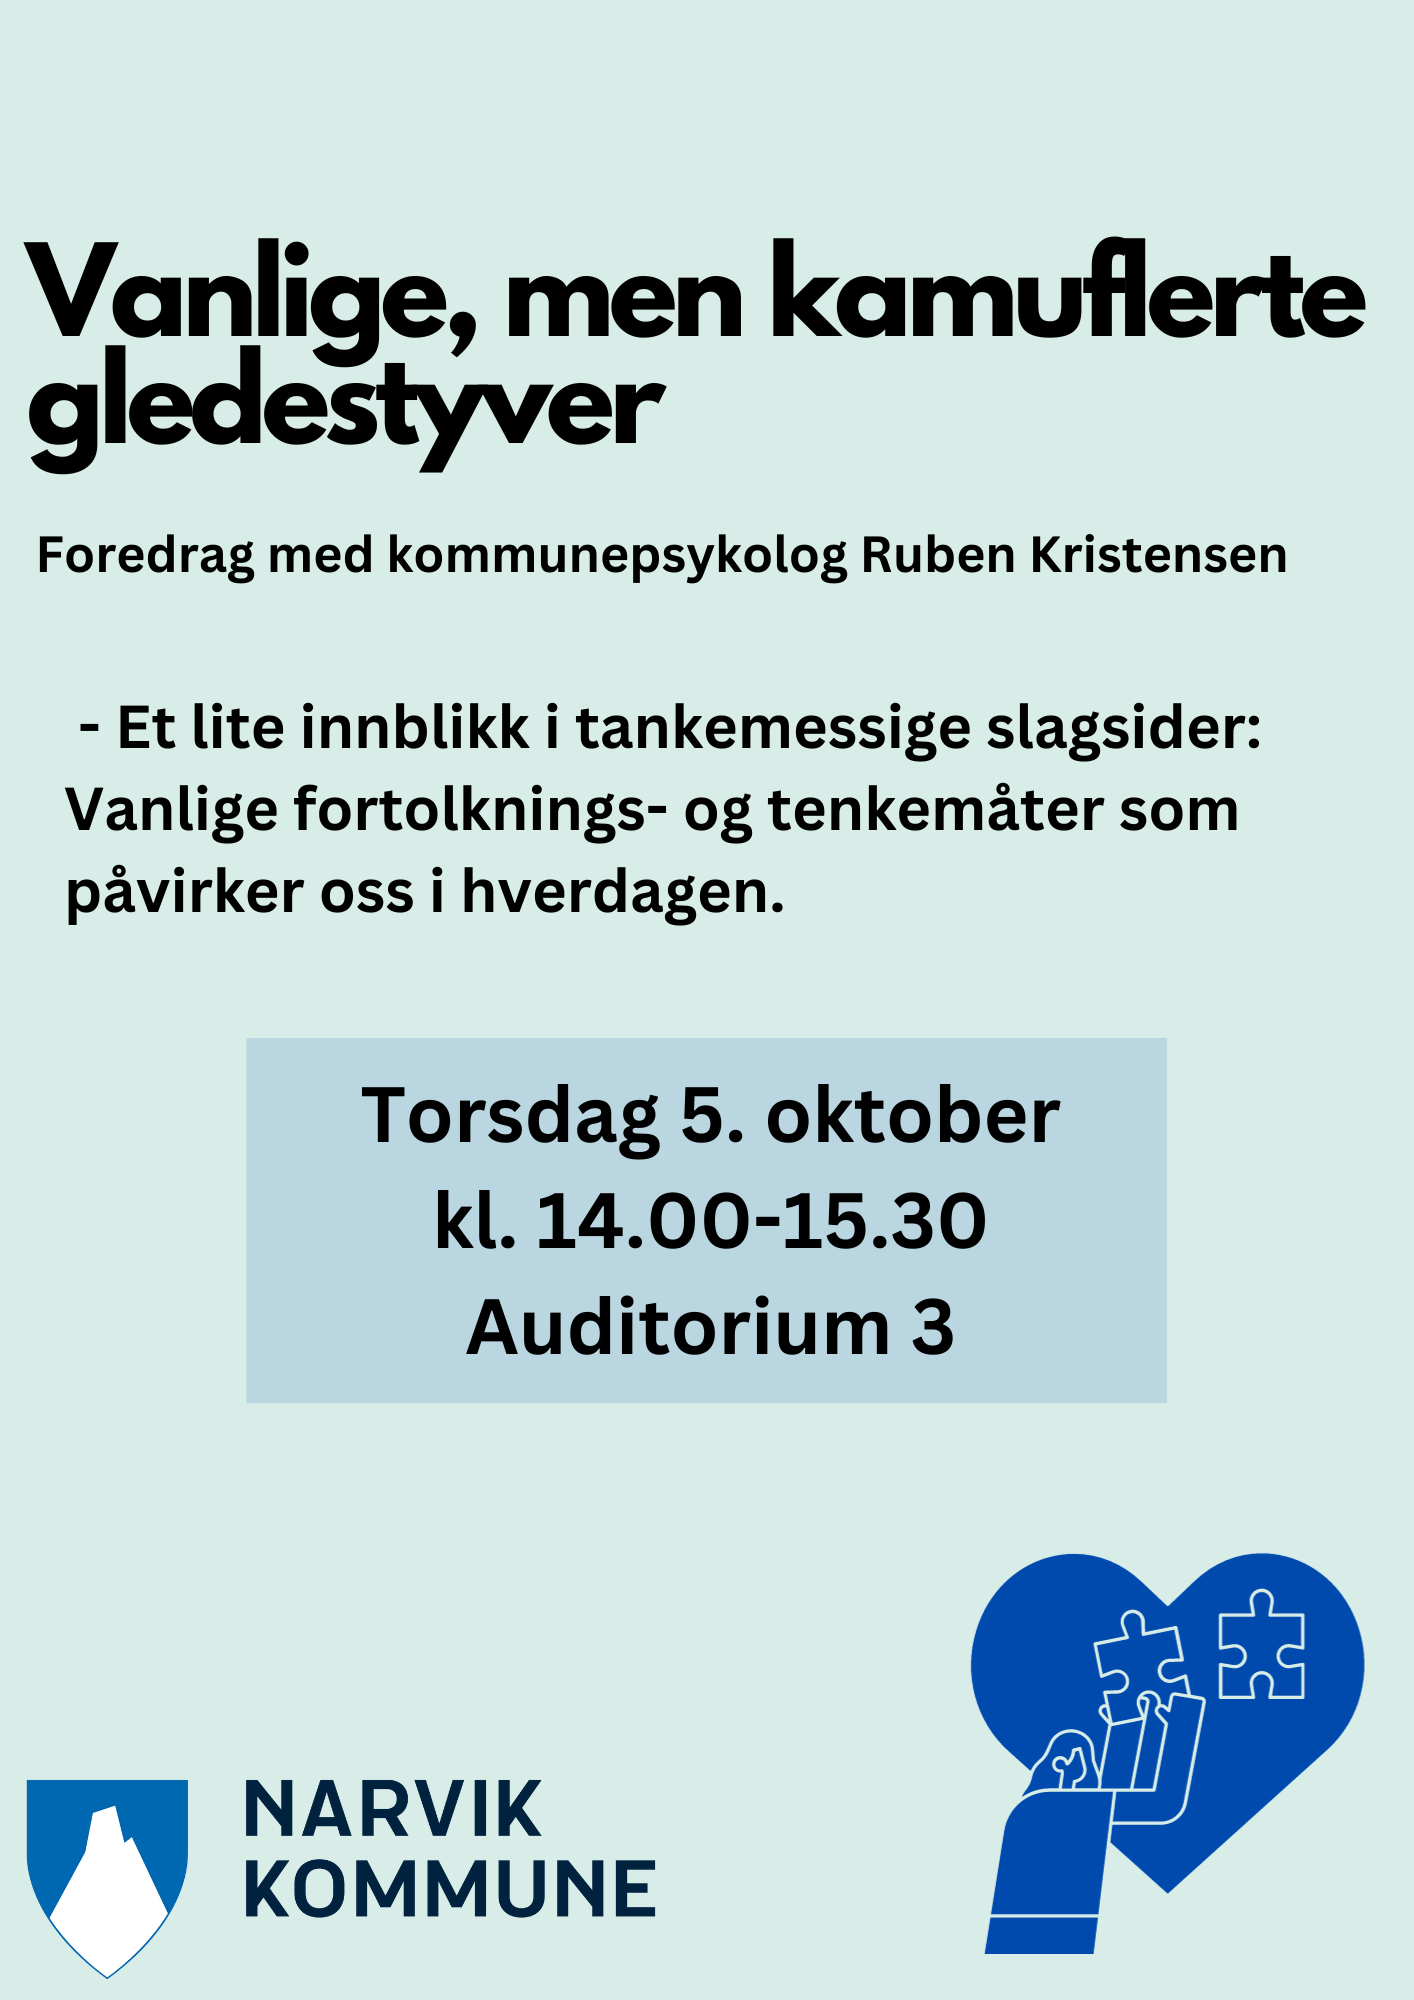 Illustrasjons-/bannerbilde for Foredrag med kommunepsykolog Ruben Kristensen : "Vanlige, men kamuflerte gledestyver" 